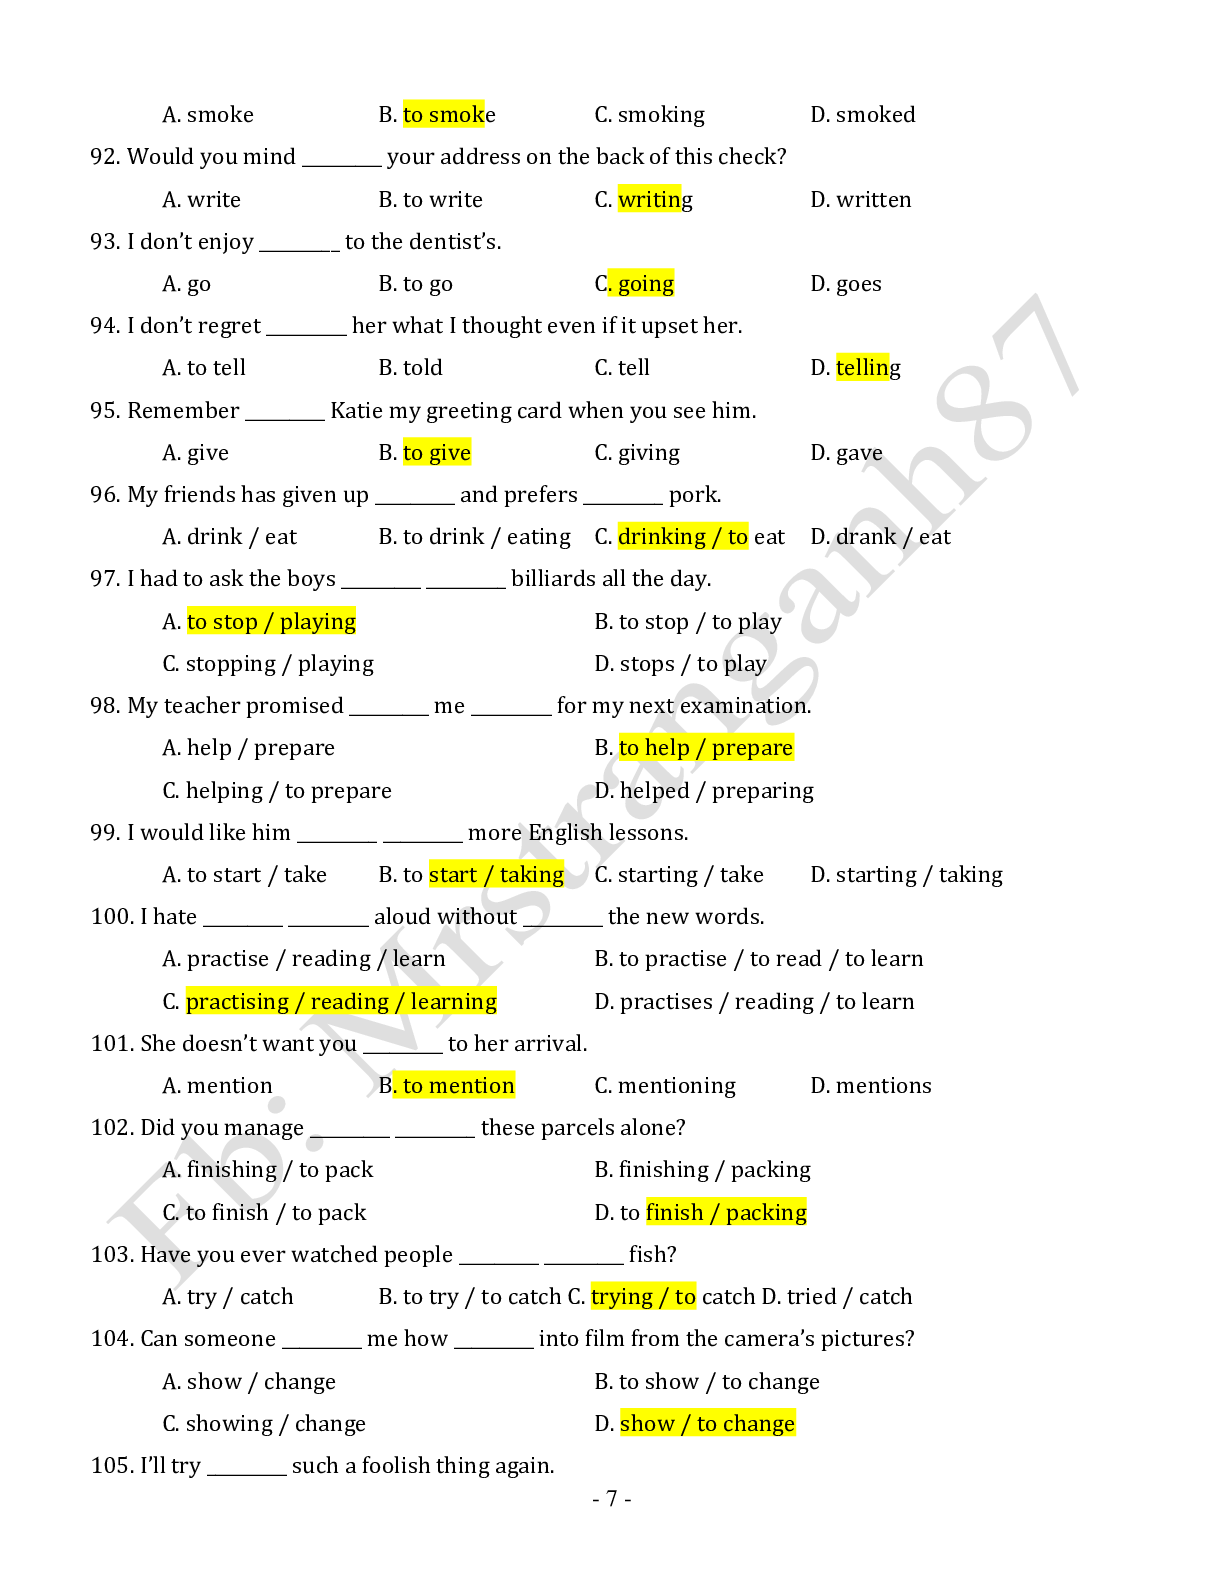 Chuyên đề: Danh động từ và động từ nguyên mẫu môn Tiếng Anh ôn thi THPTQG (trang 7)